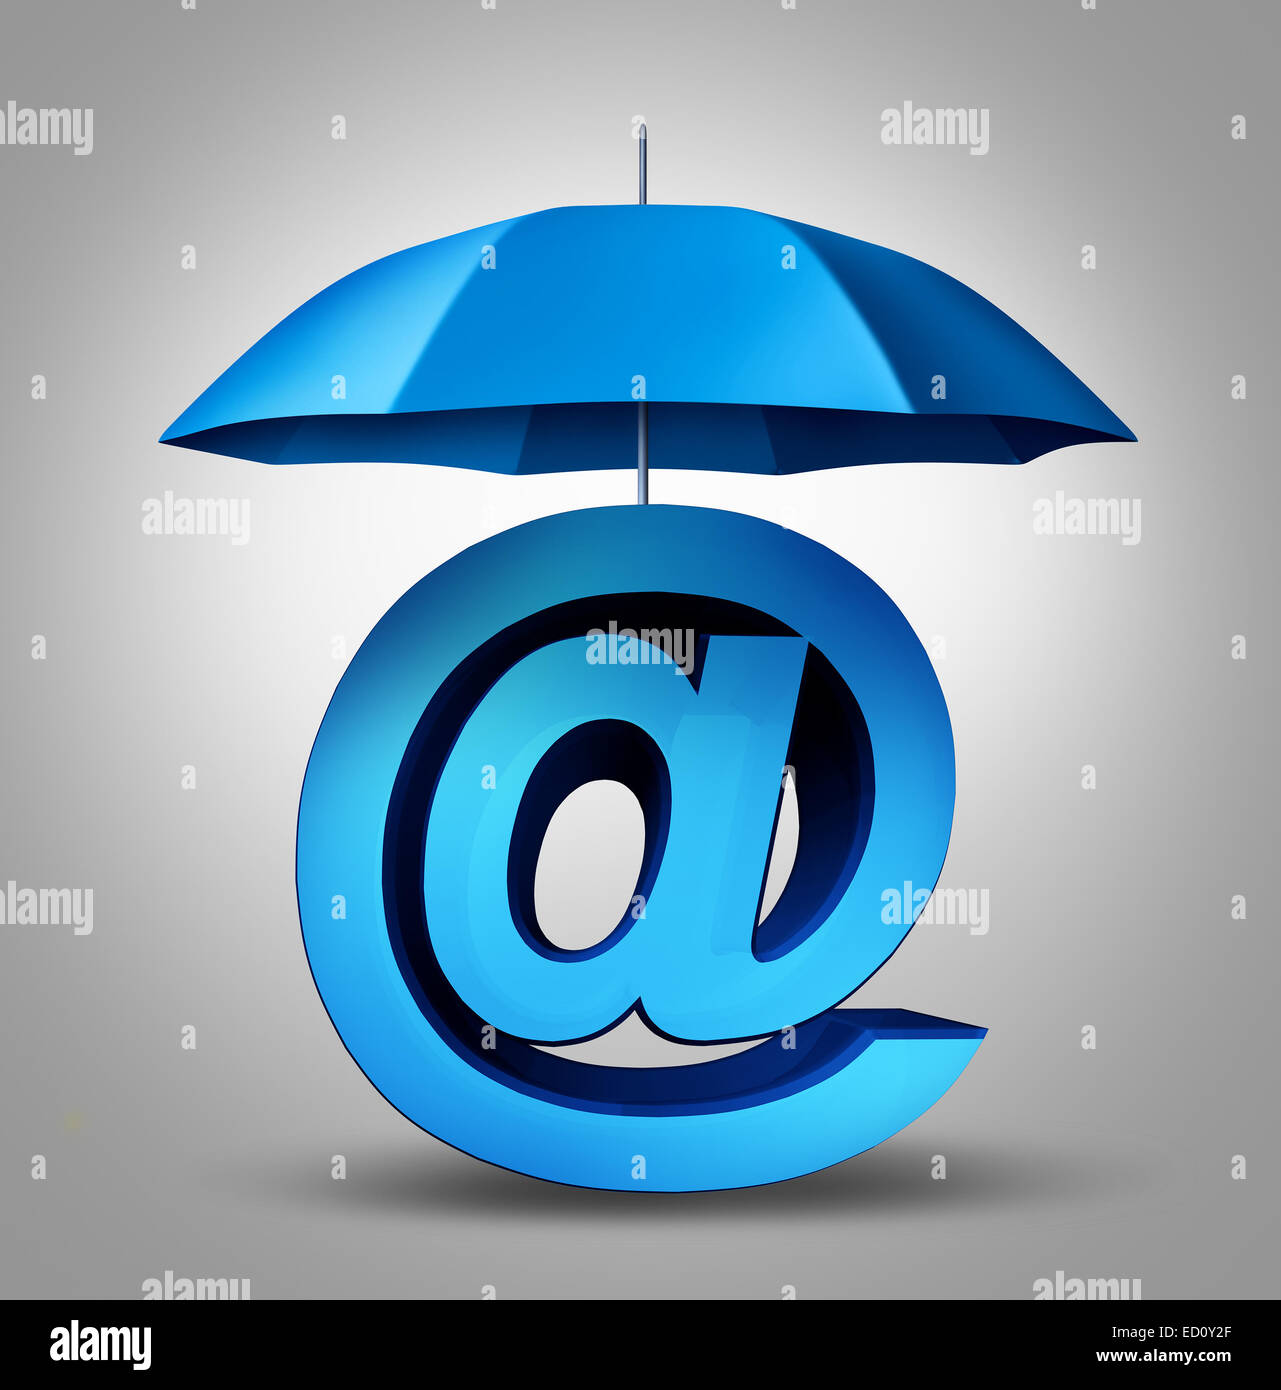 Sécurité Internet et email protection technologie concept comme un parapluie bleu offrant une sécurité à trois dimensions esperluette symbole et icône de site web. Banque D'Images